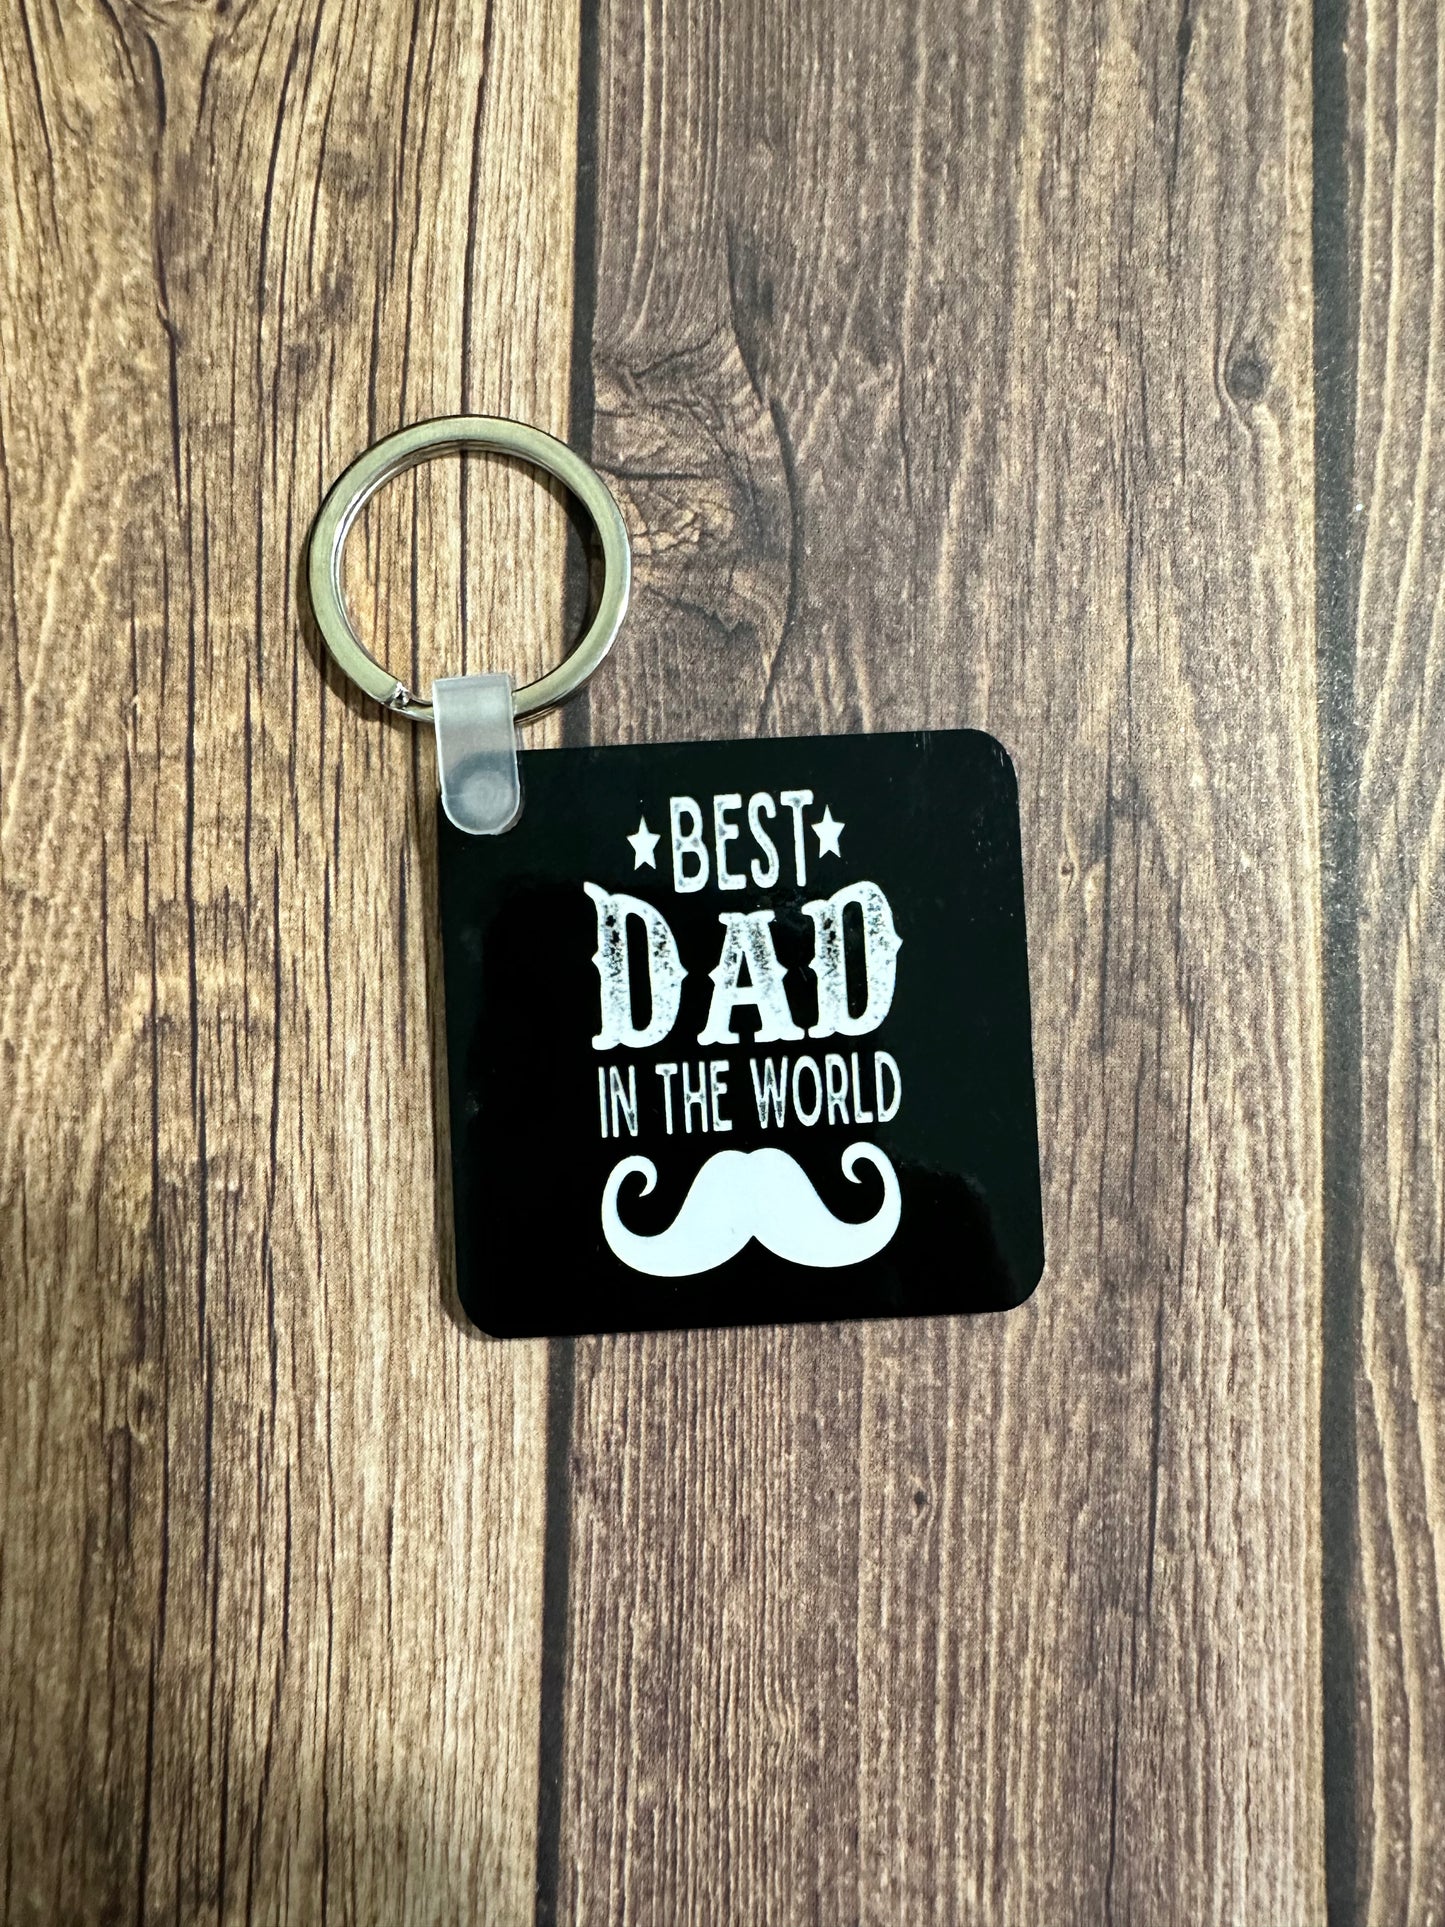 Best dad in the world keychain